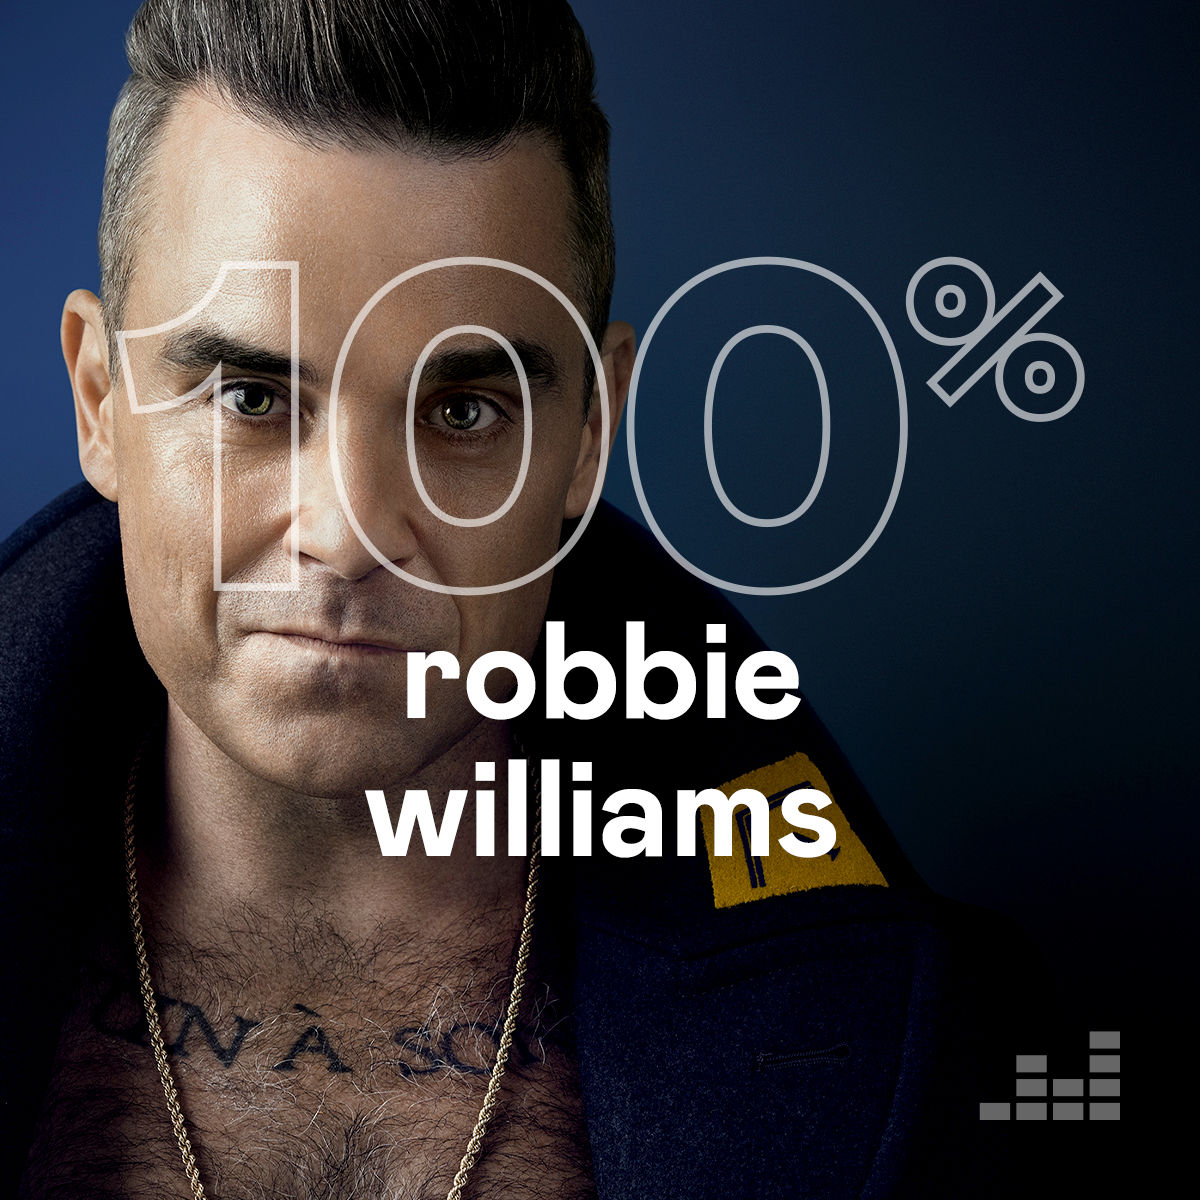 100% Robbie Williams (2022)